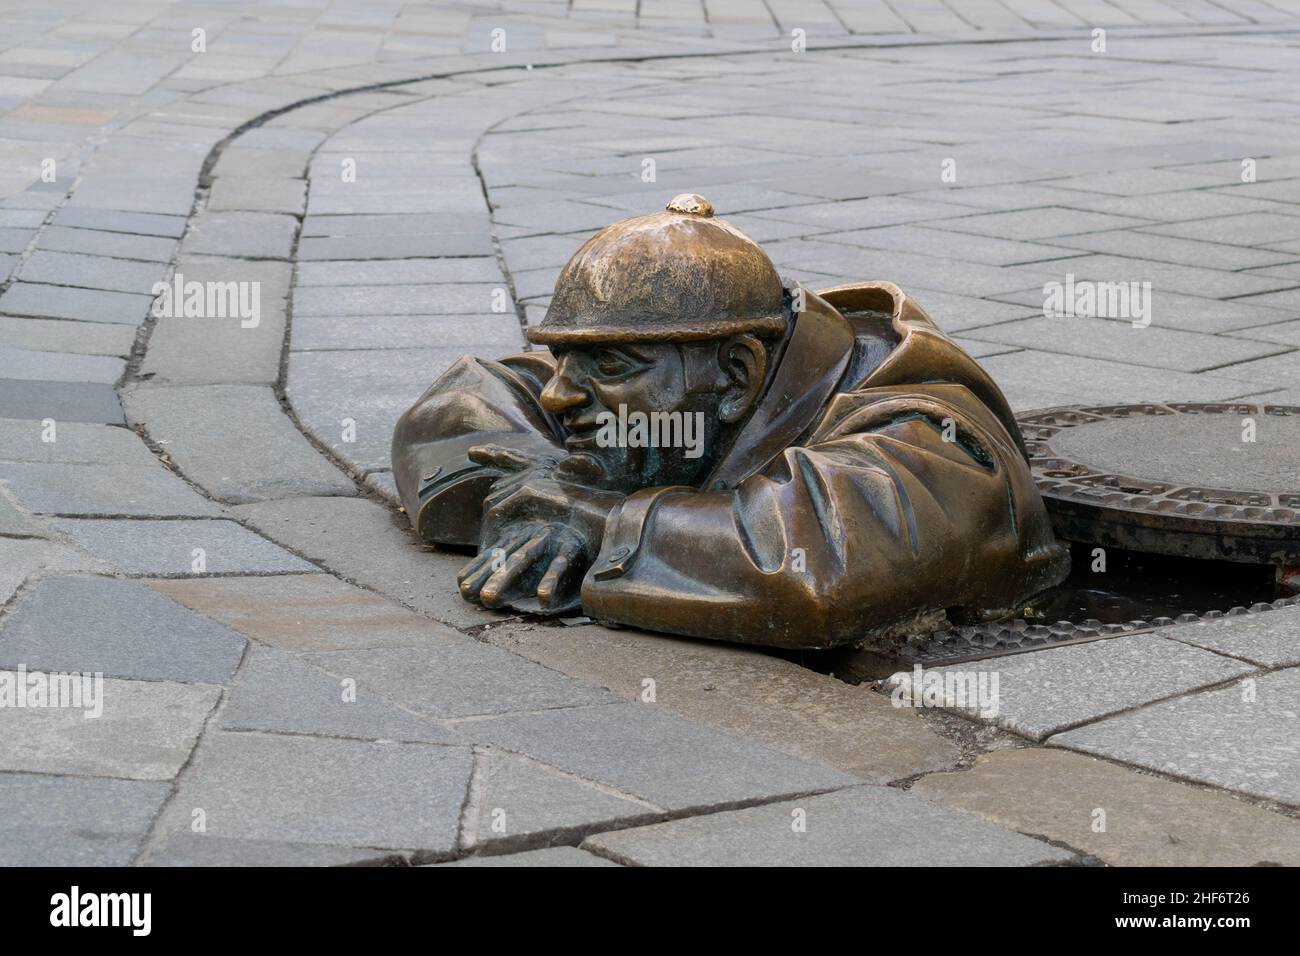 Cumil, die Statue des Mannes bei der Arbeit, aka, der Beobachter. Berühmte Skulptur in Bratislava, Slowenien, die einen Abwasserarbeiter zeigt, der aus einem Schachtloch auf der Passe guckt Stockfoto